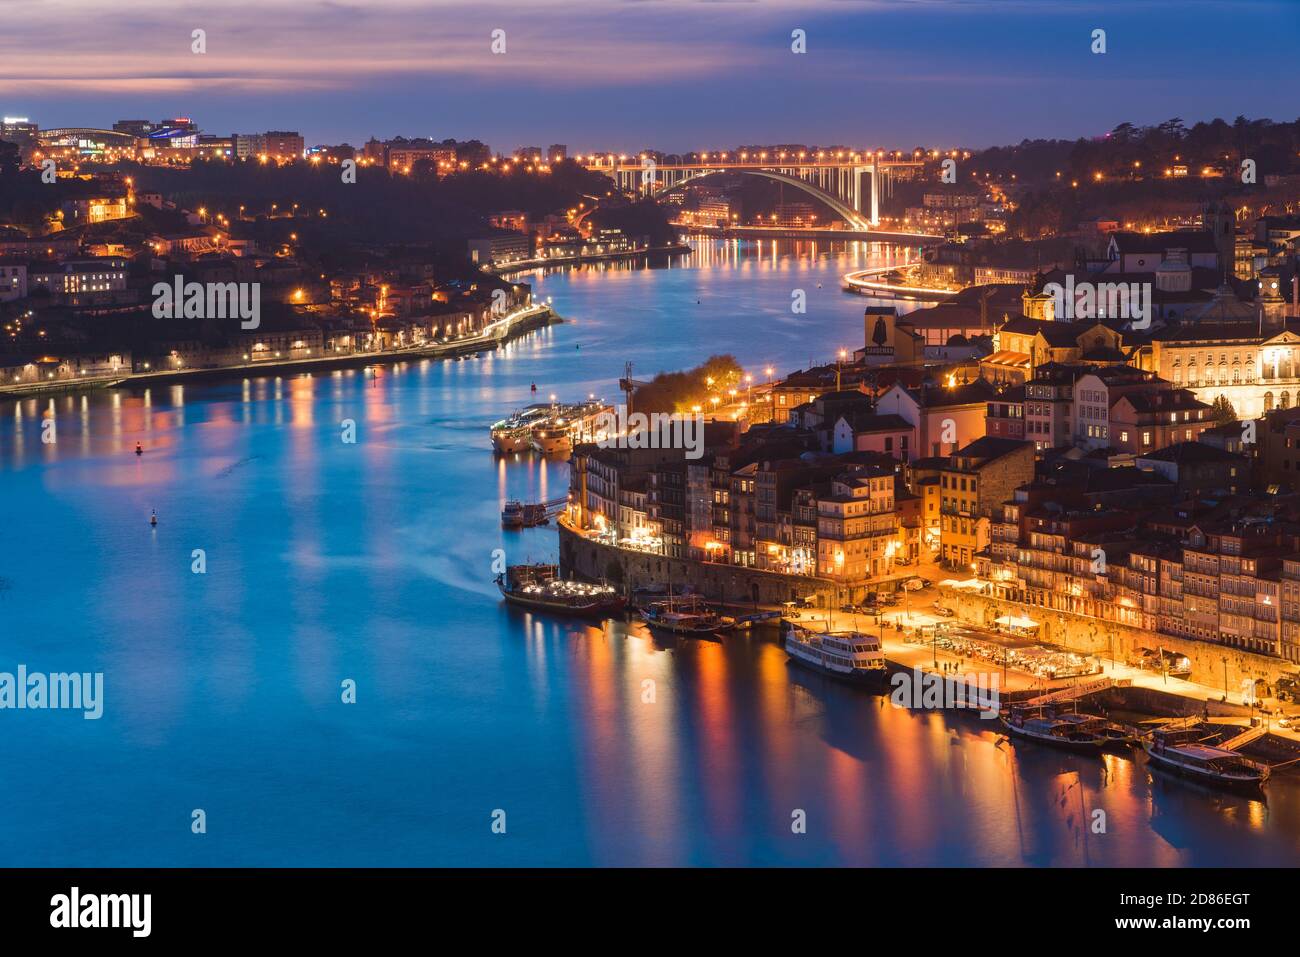 Vue de nuit sur le fleuve Douro entre Porto et Vila Nova Villes de Gaia au Portugal Banque D'Images